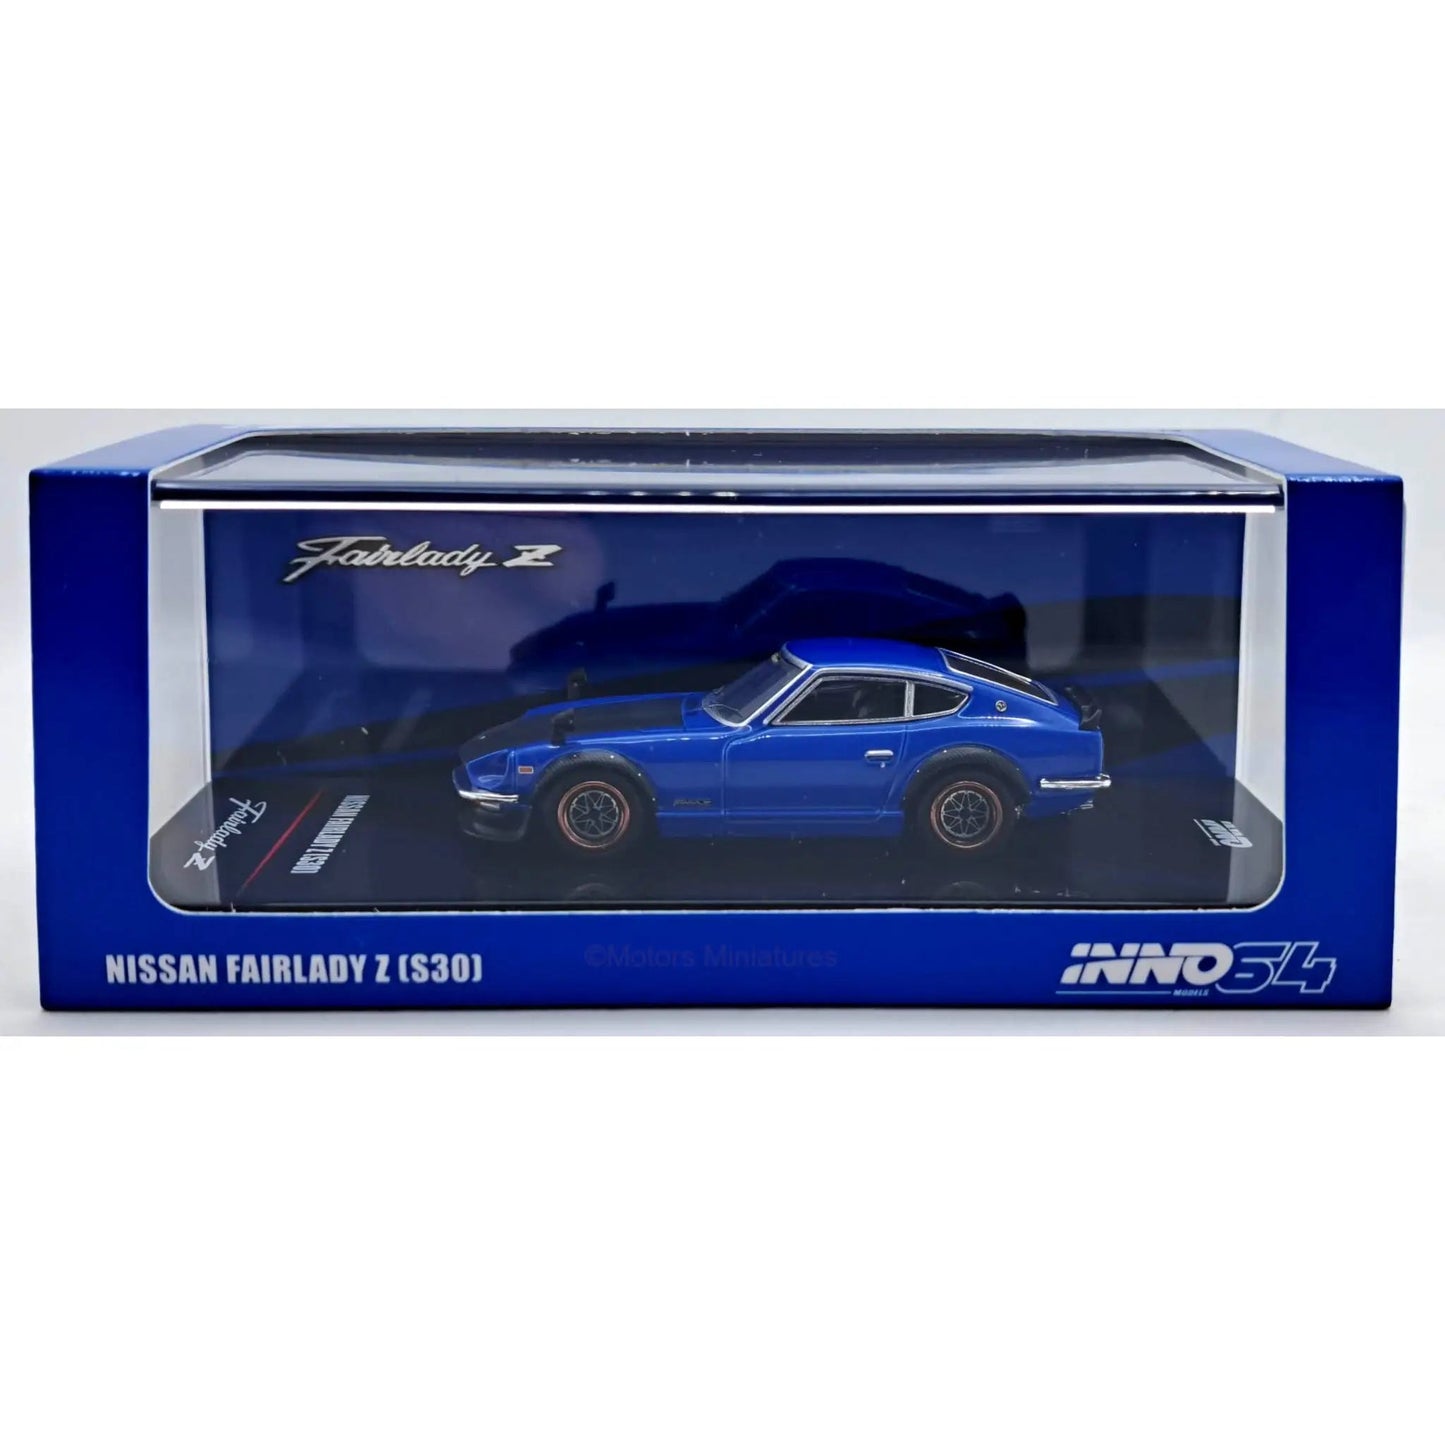 Nissan Fairlady Z S30 bleu/noir Inno64 1/64 - in64-240Z-BLU